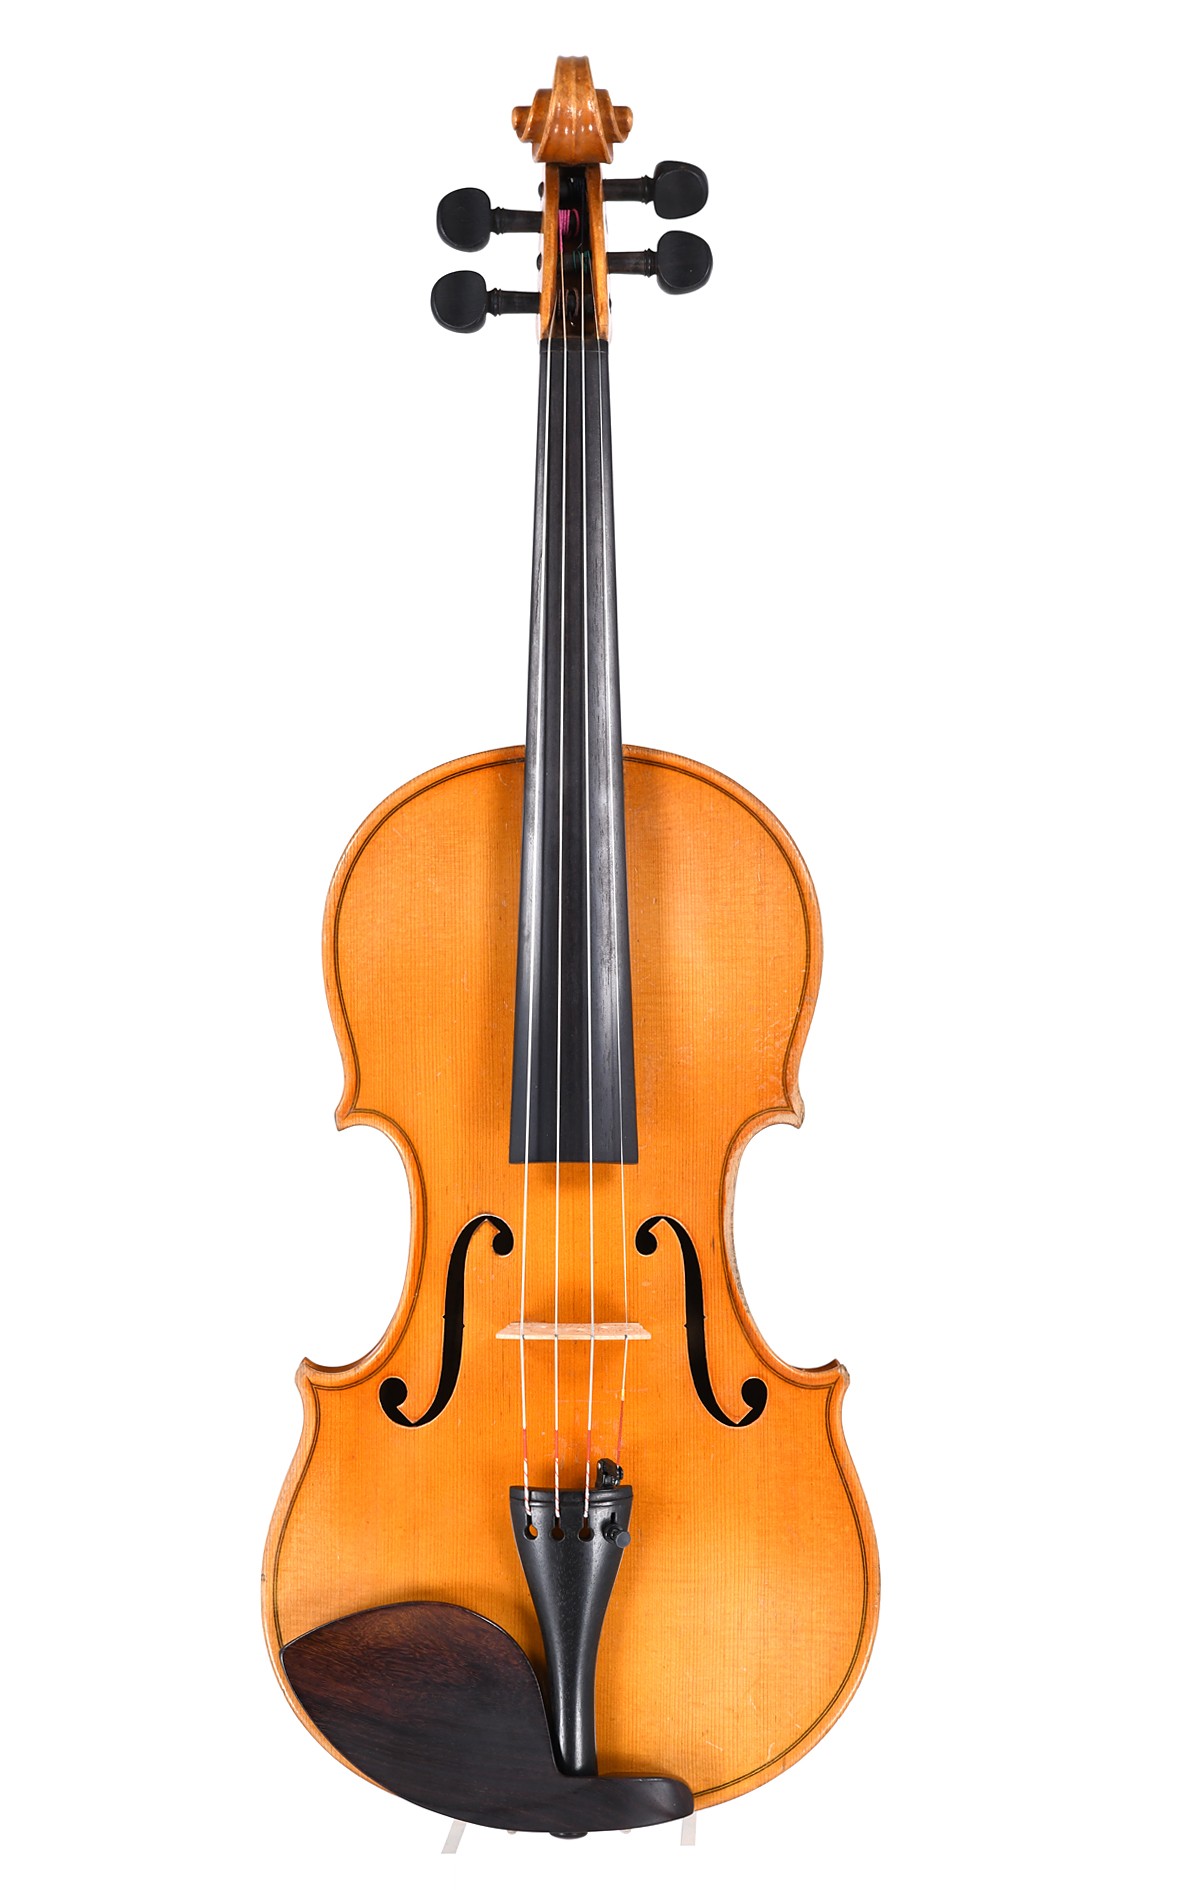 Markneukirchen violin